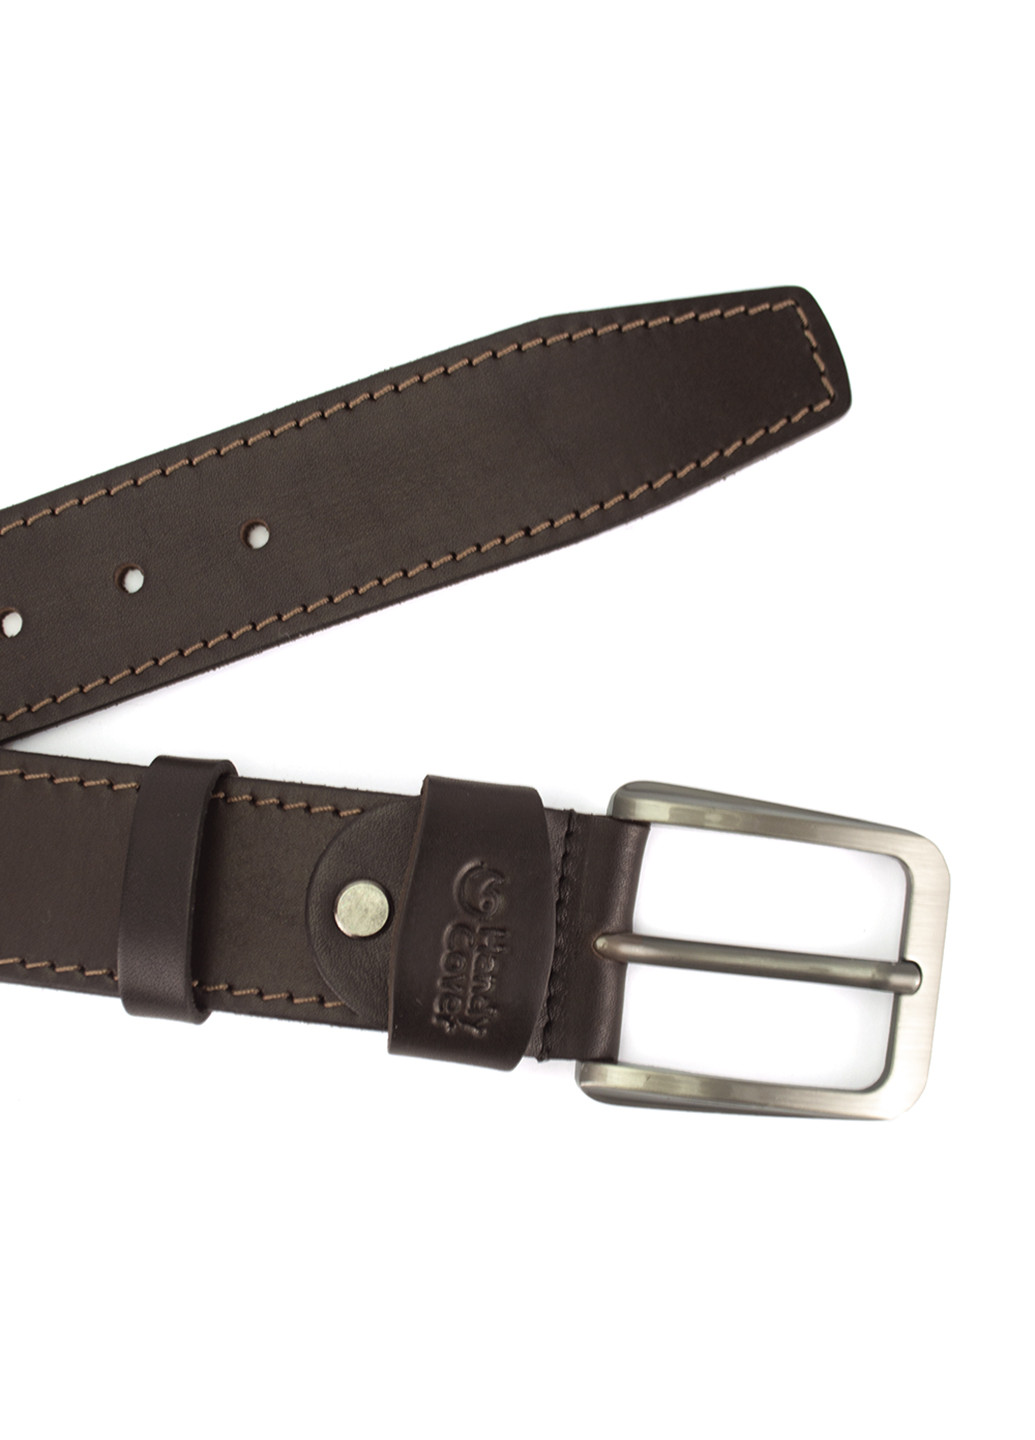 Ремень мужской кожаный батал HC0072 коричневый XXL (150 см) HandyCover (251705956)